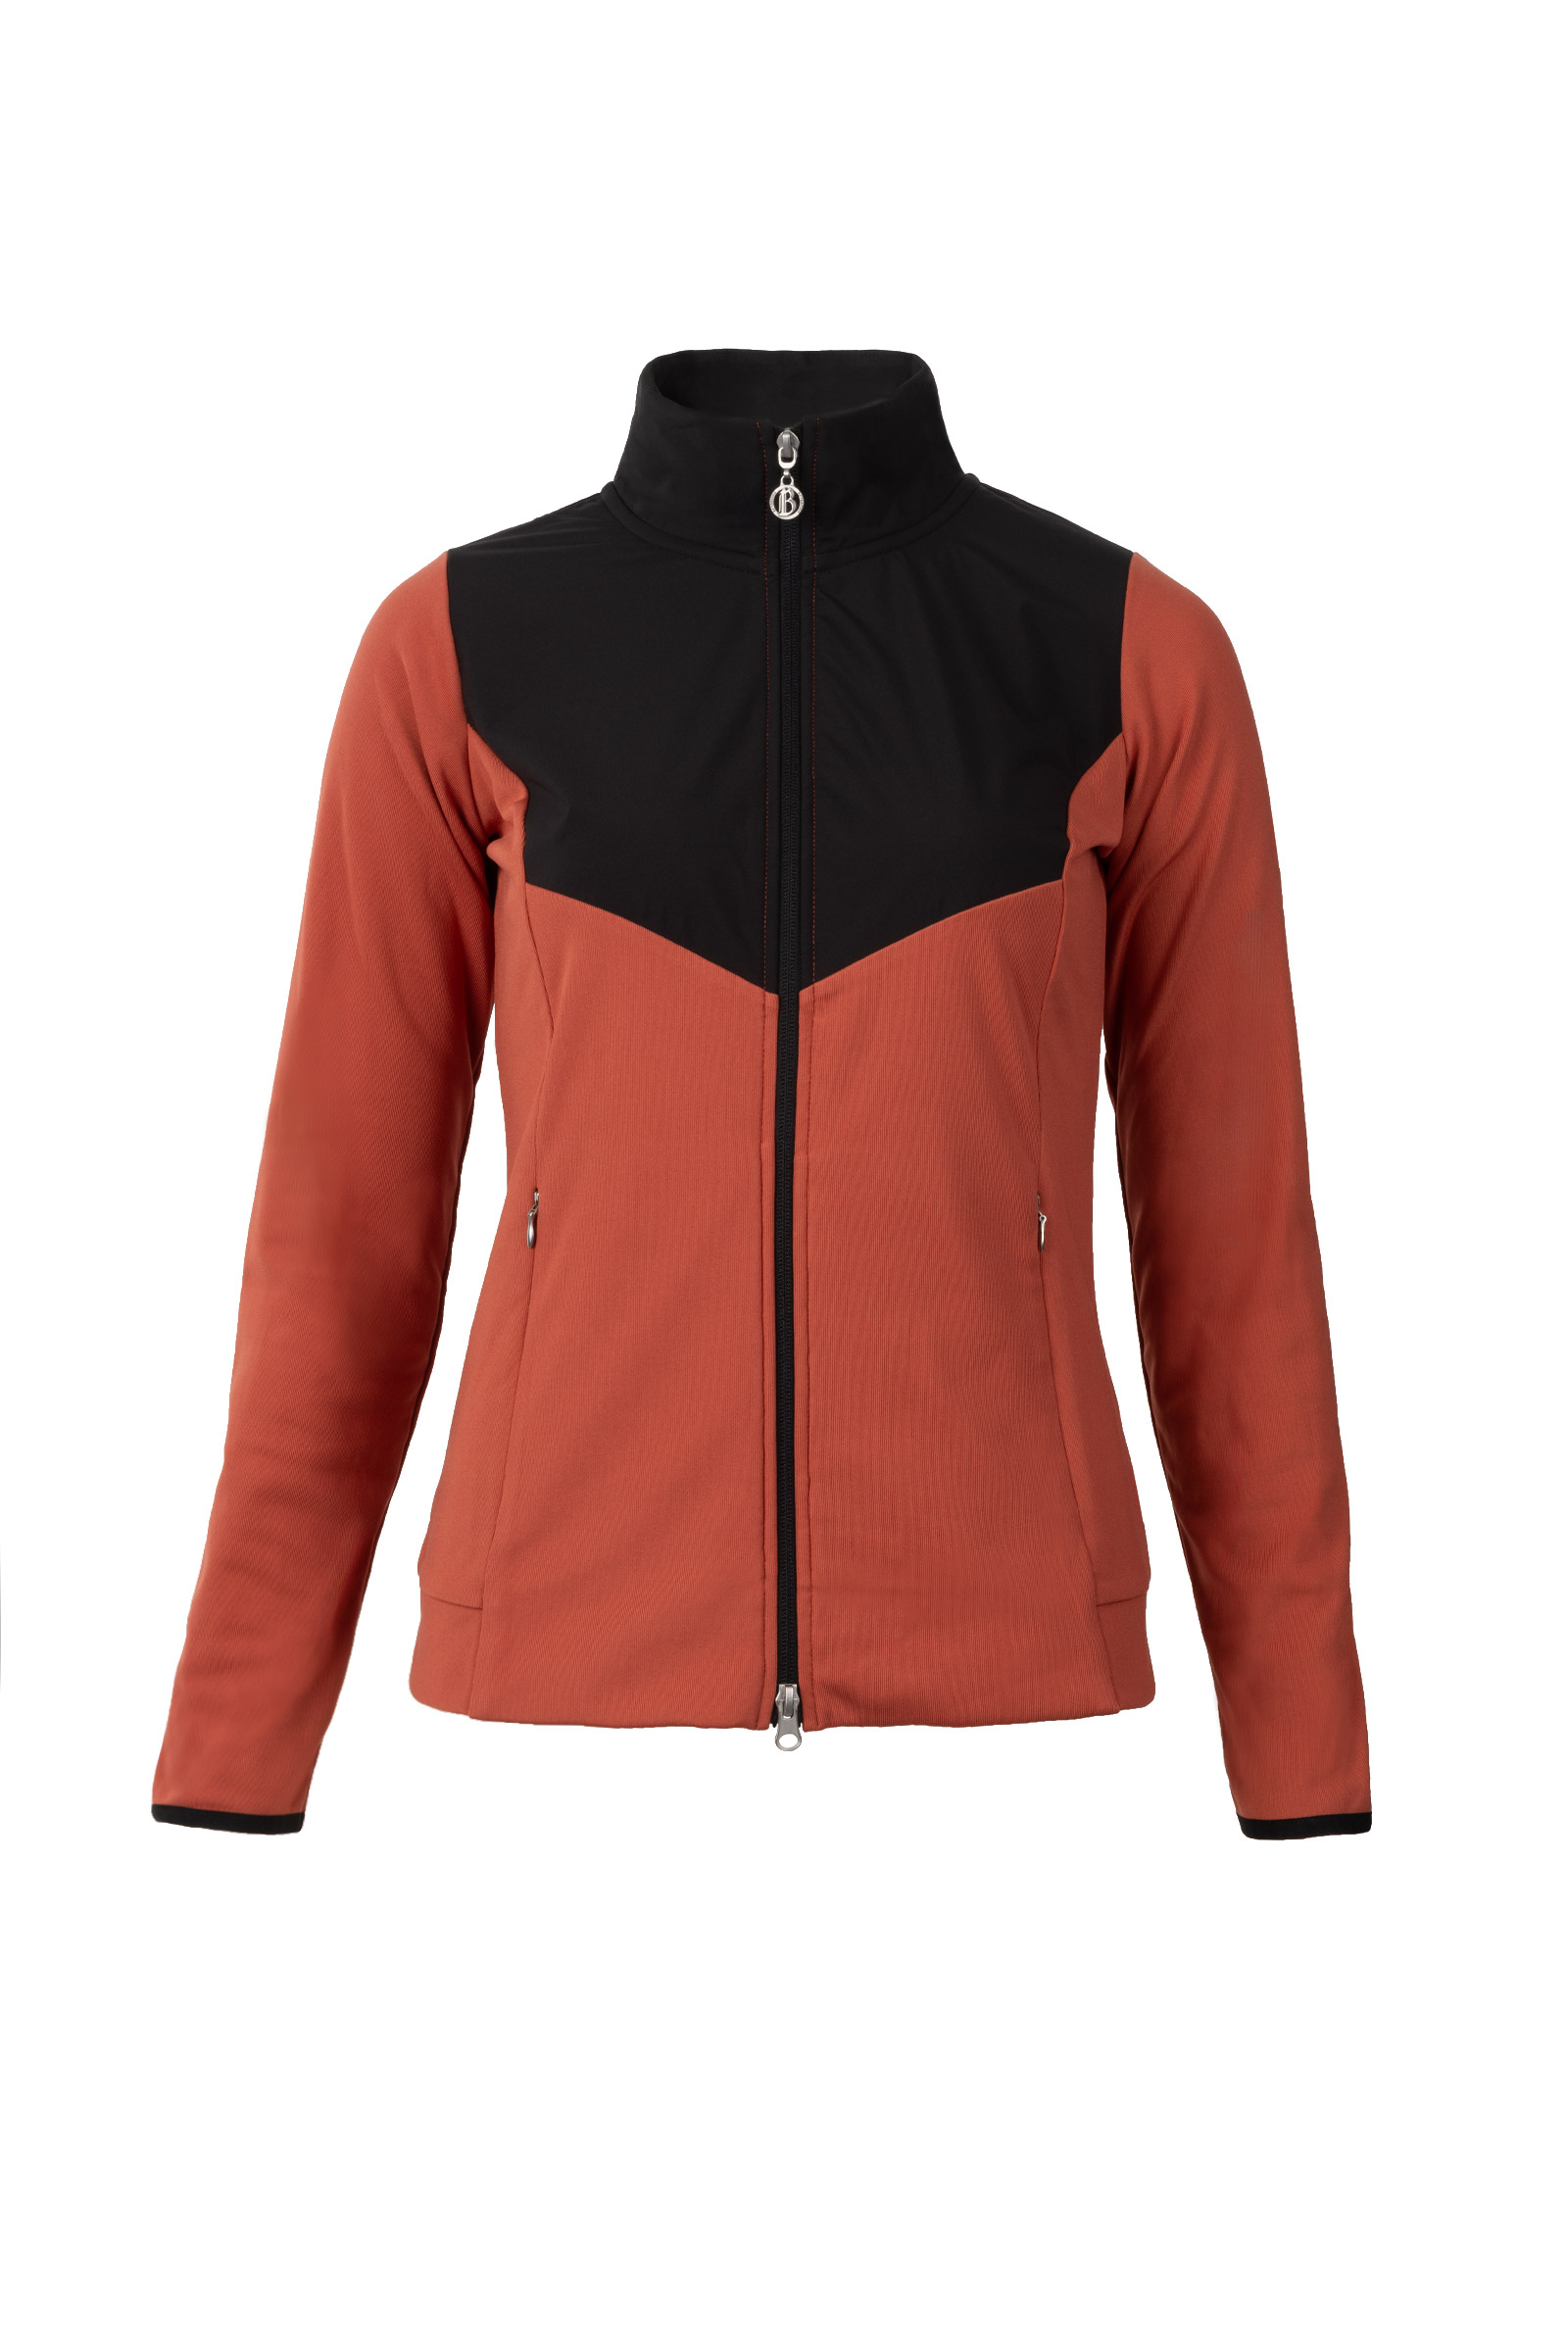 Buy B Vertigo Carina Women's Fleece Riding Jacket